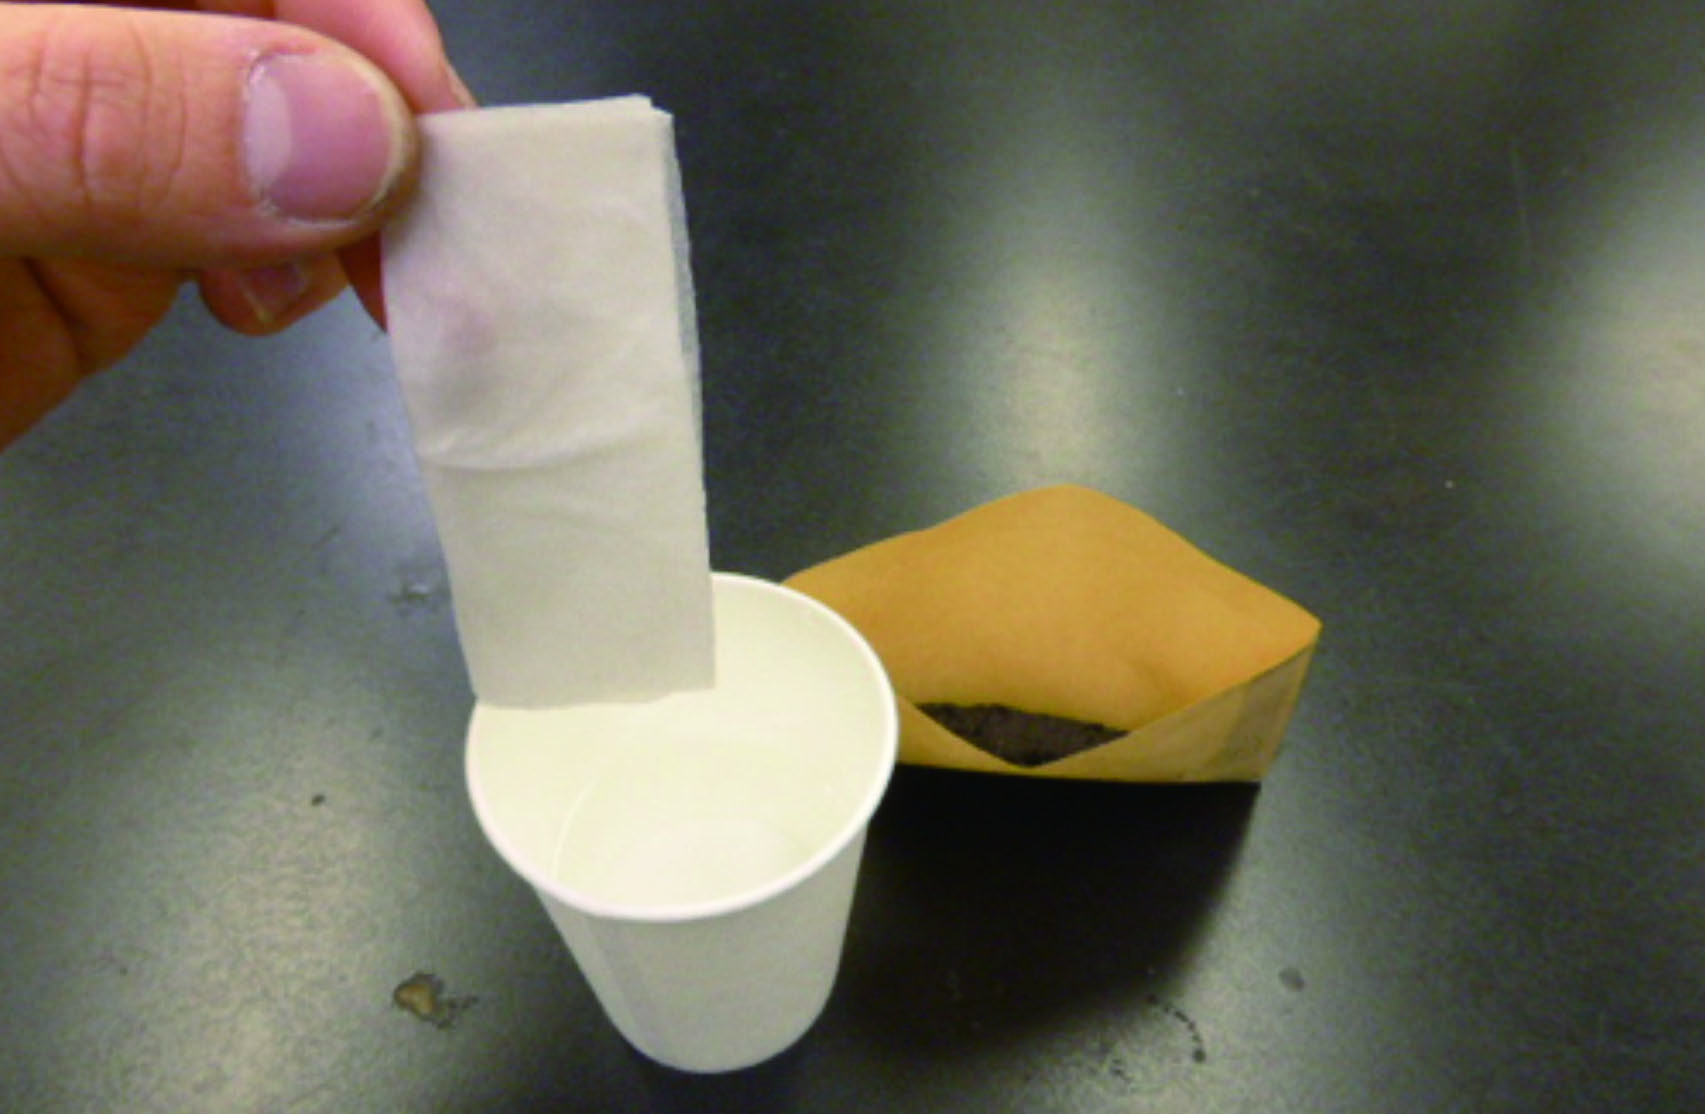 実験操作3: 半分の大きさに切ったキッチンペーパーを封筒に入る大きさに折りたたみ，食塩水に浸す。キッチンペーパーを食塩水がたれない程度に軽くしぼり，封筒に入れる。